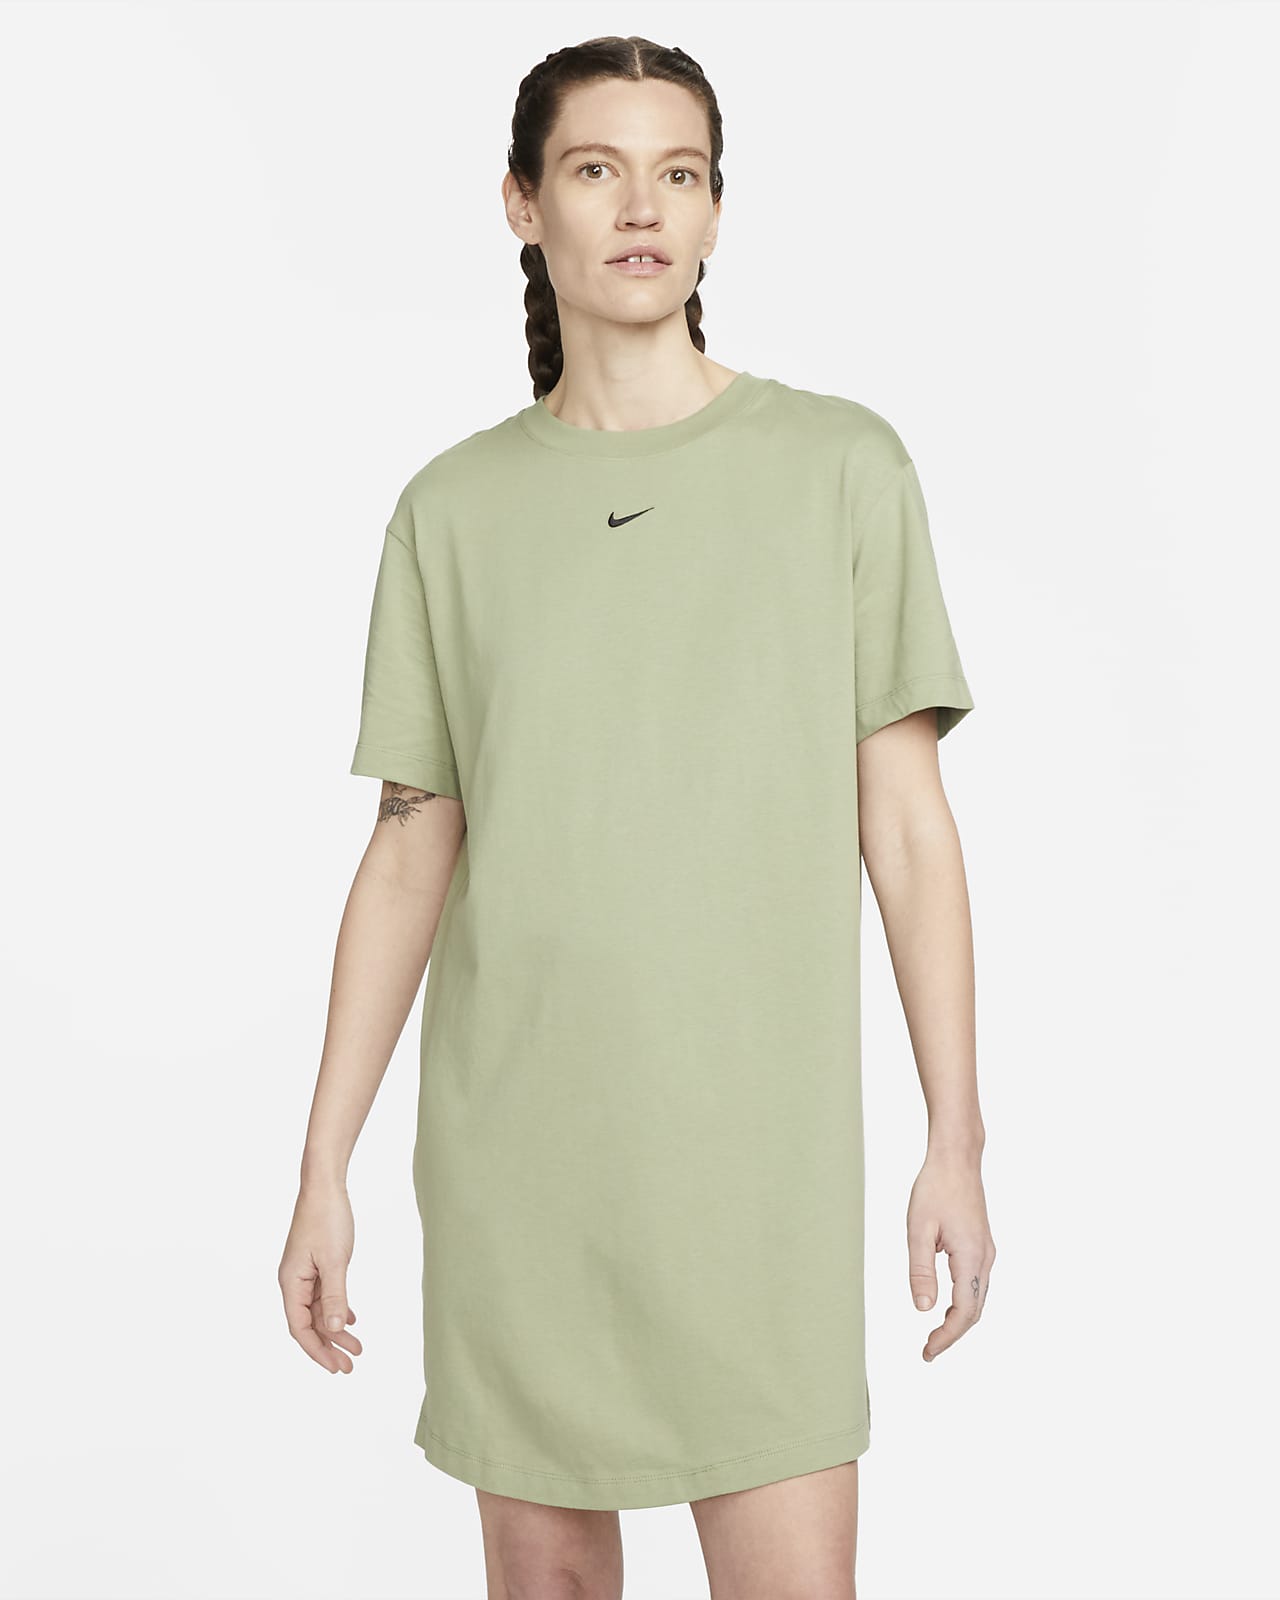 Tijdreeksen diefstal binnenkort Nike Sportswear Essential Women's Short-Sleeve T-Shirt Dress. Nike.com